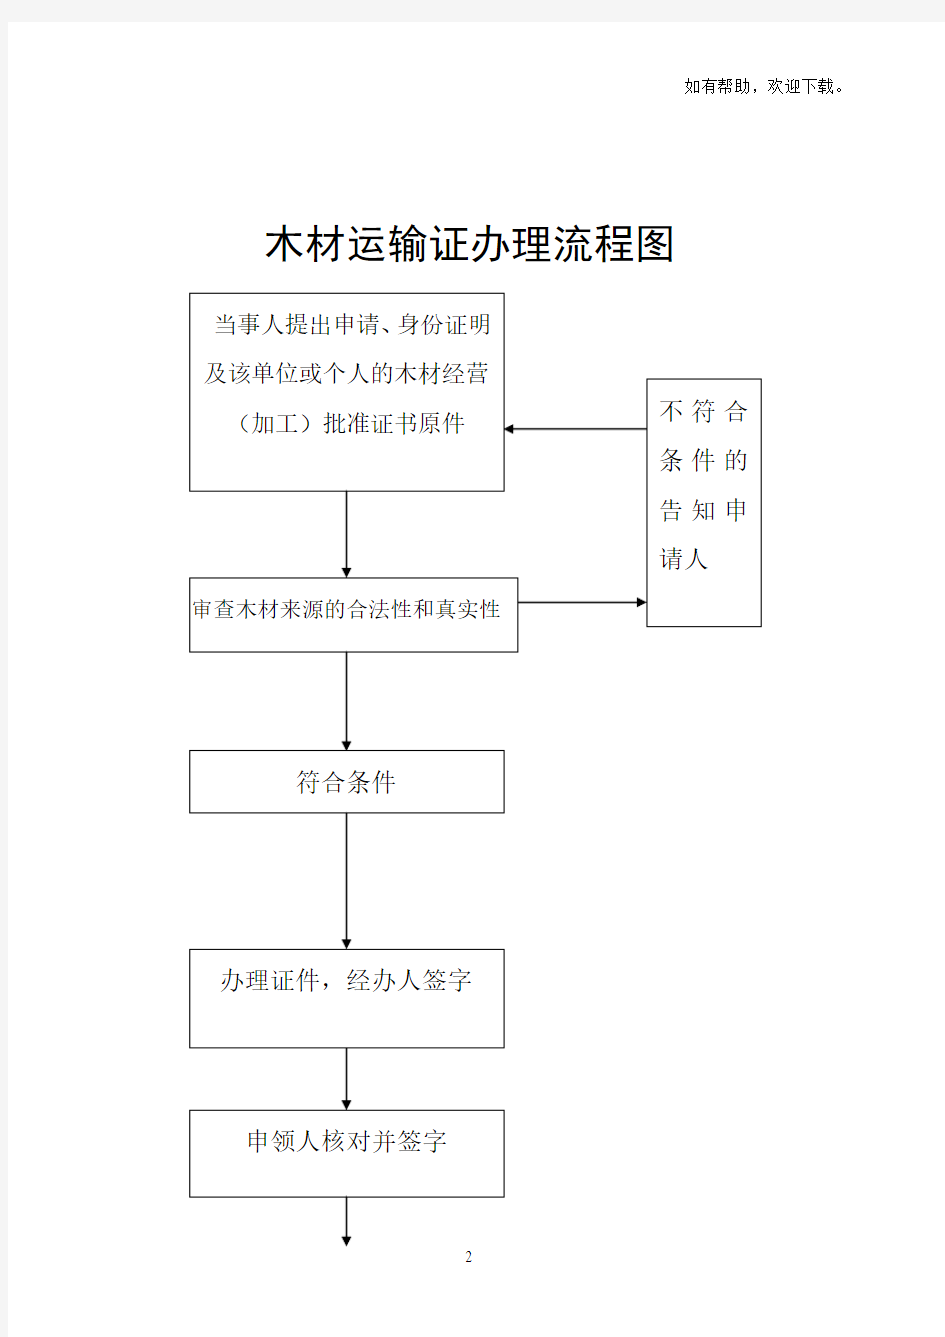 林木采伐许可证办理流程图